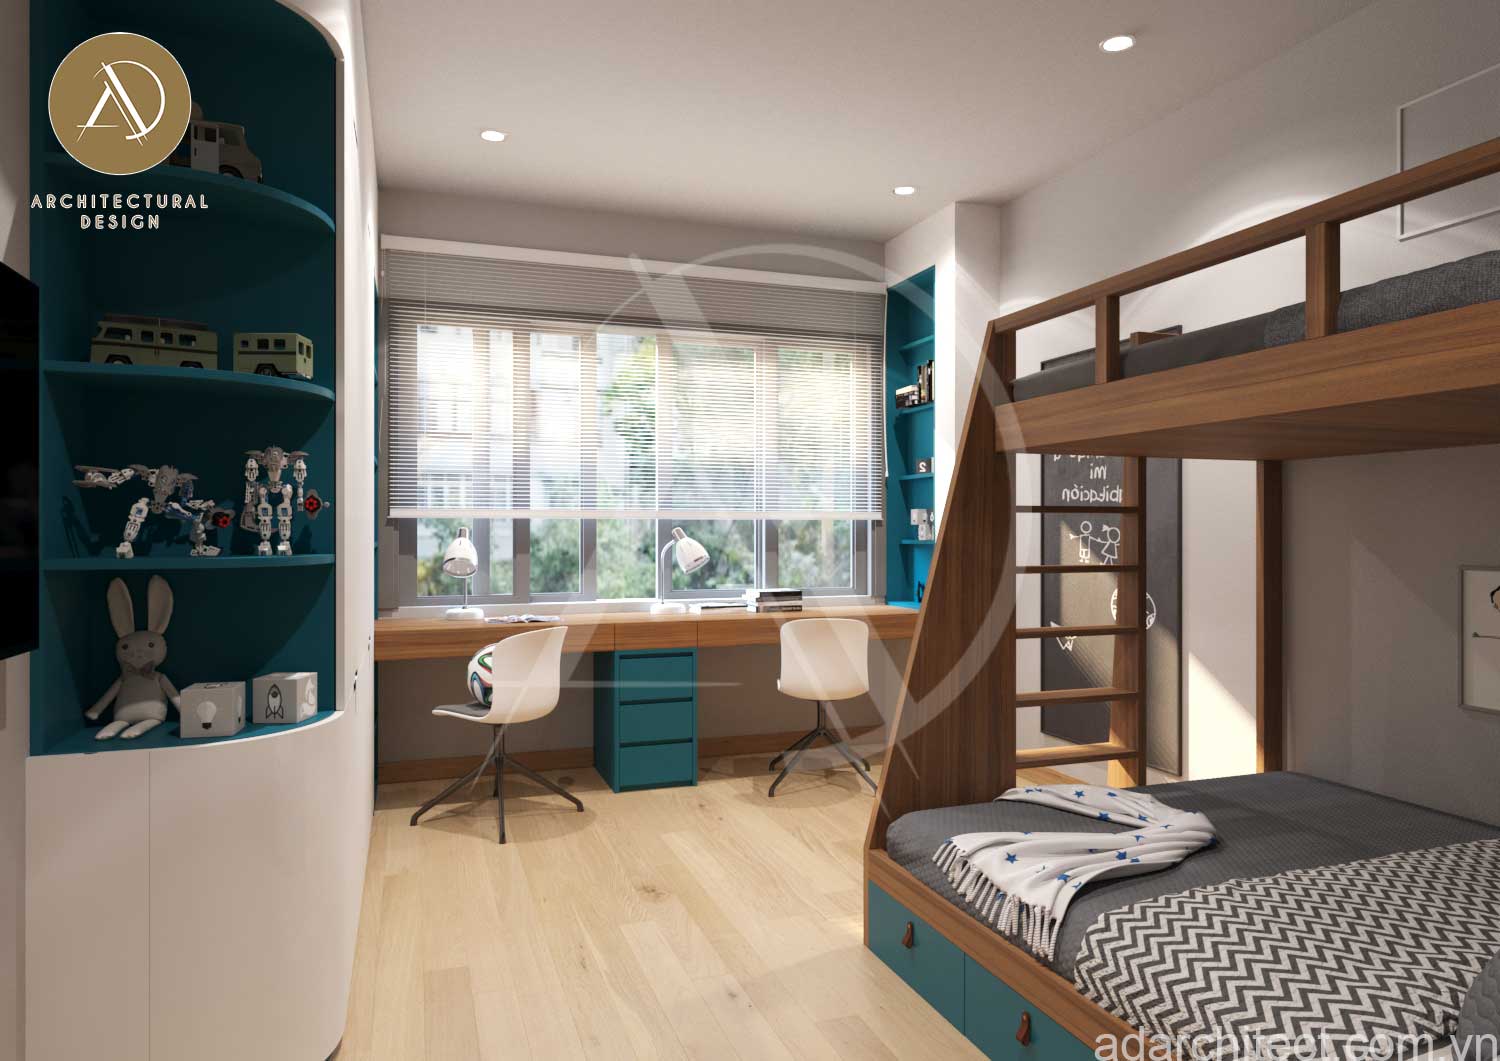 mẫu nhà ống 3 phòng ngủ: Việc học tập sẽ được thoải mái hơn khi thiết kế cửa sổ lớn